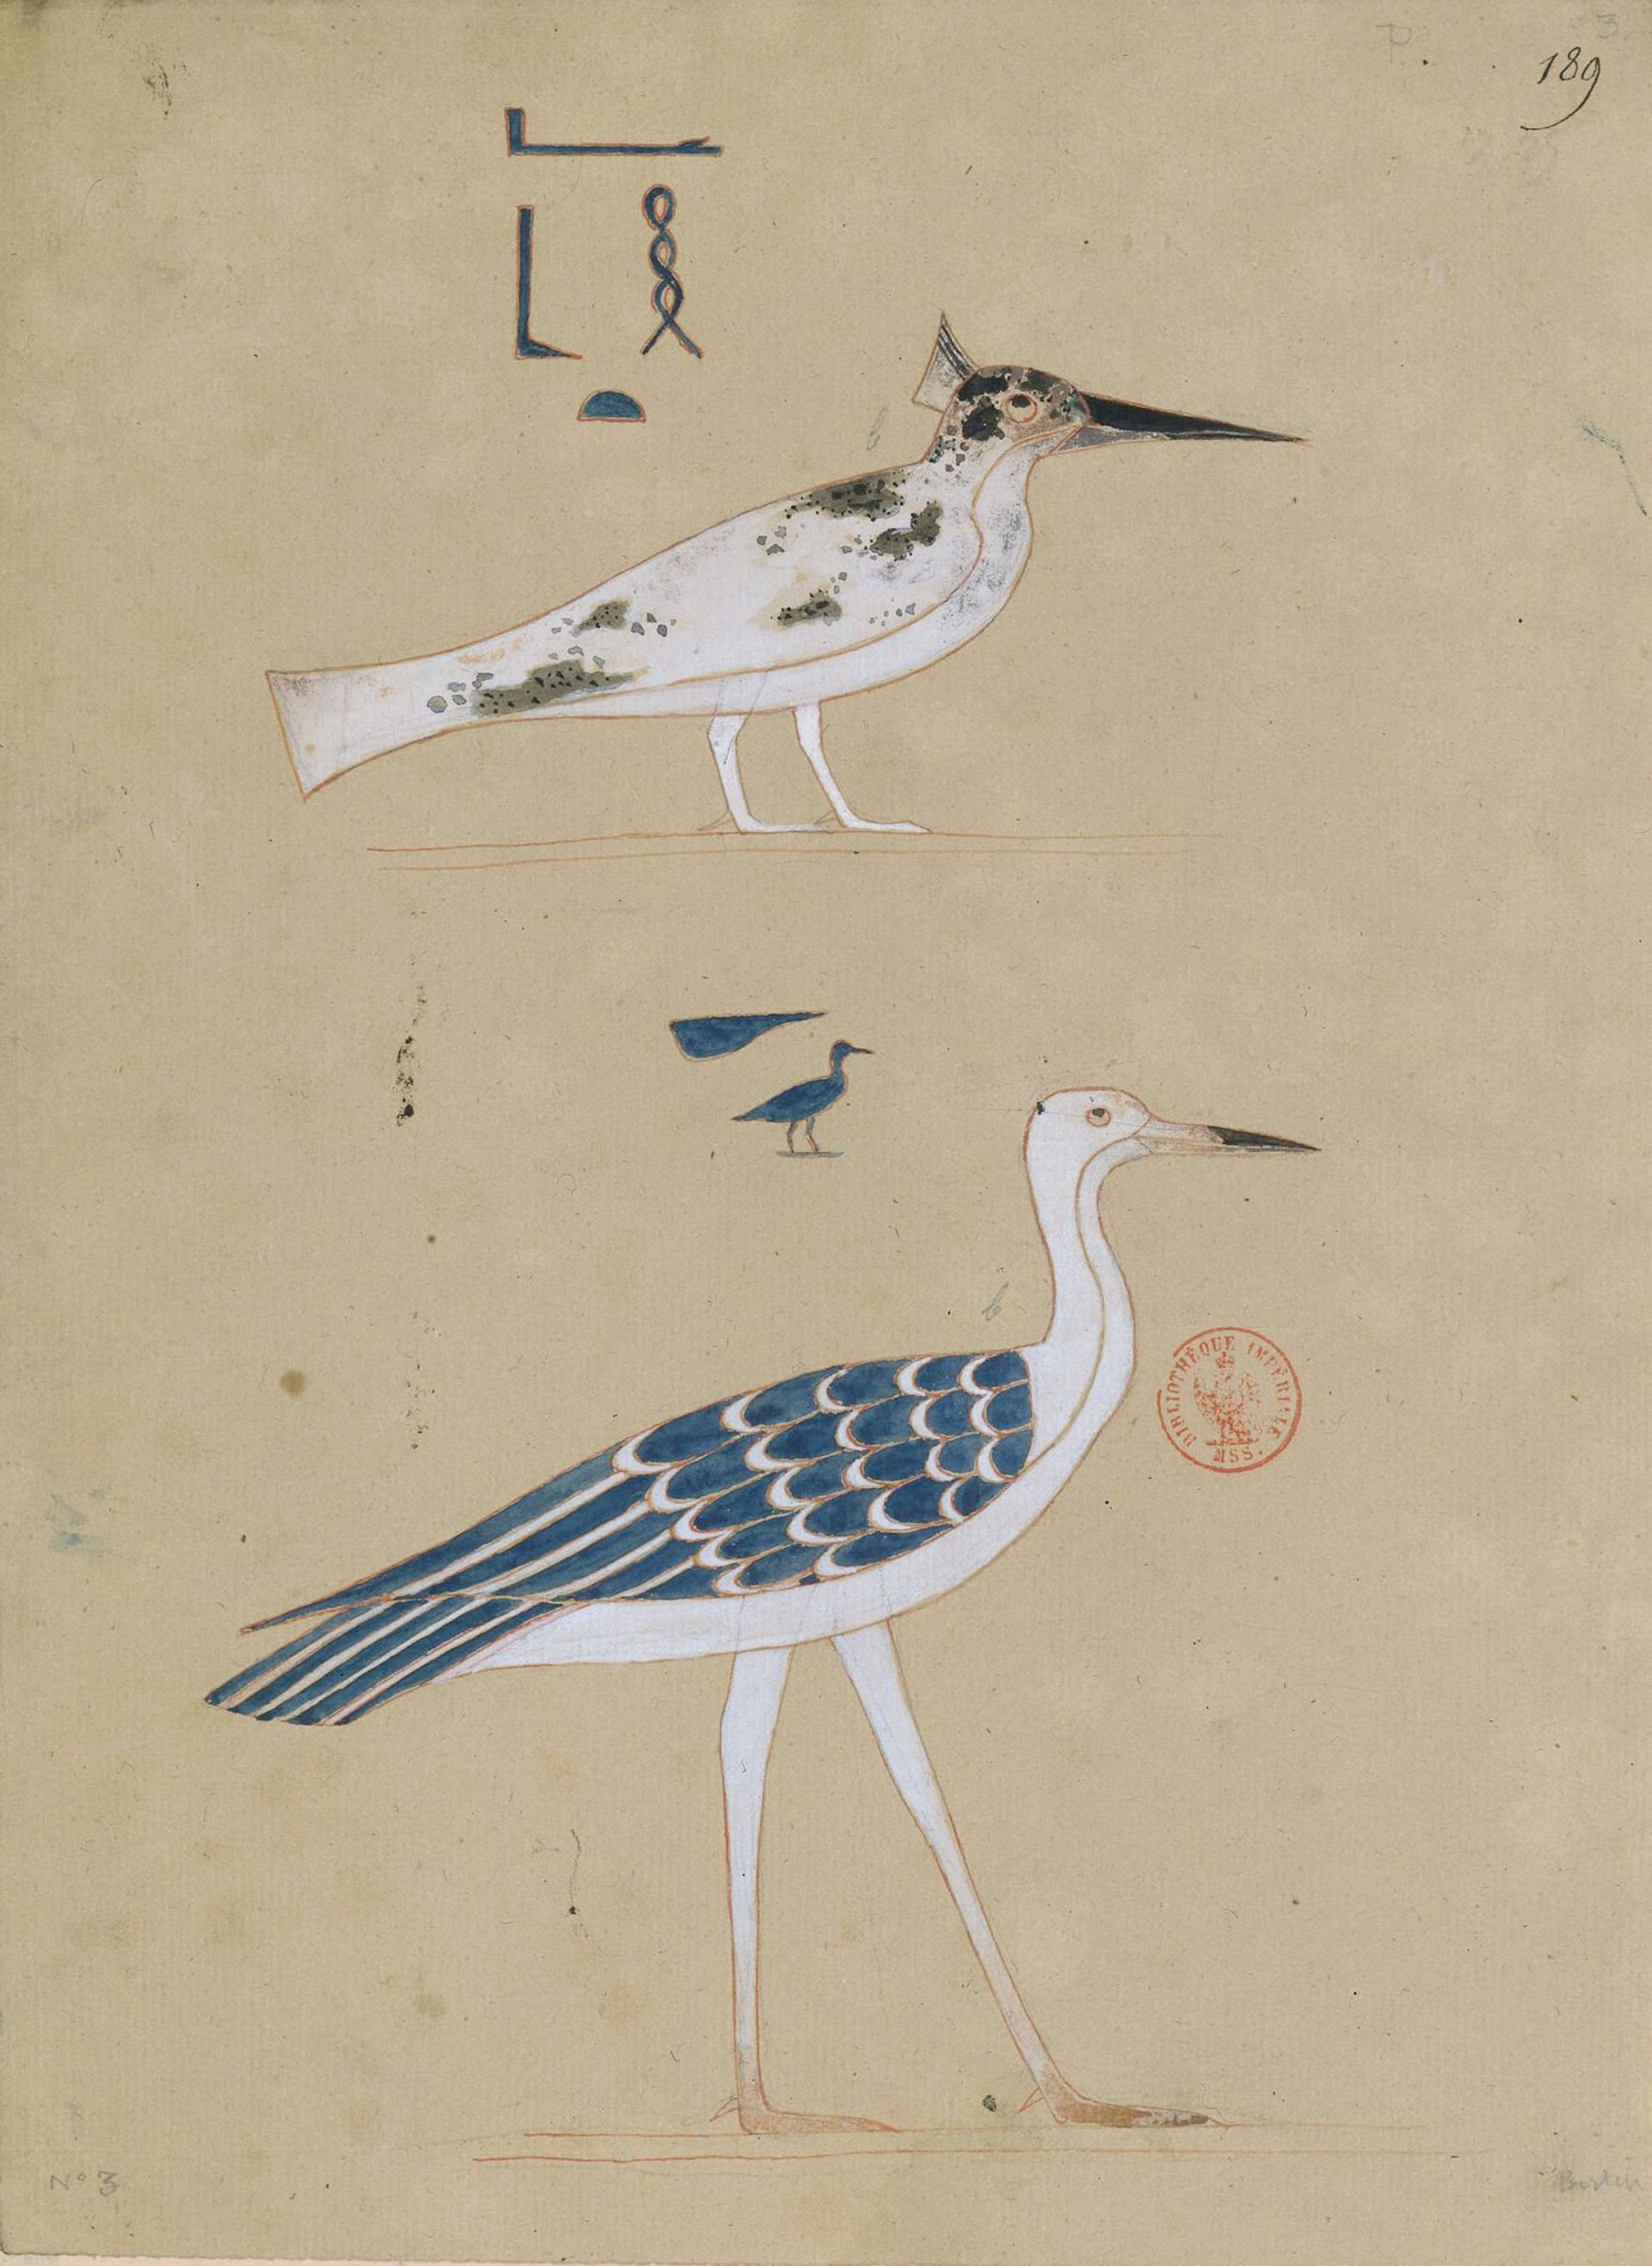 Jean-François Champollion, « Les oiseaux », Monuments de l’Égypte et de la Nubie, 1835-1845, manuscrit, BnF, département des Manuscrits. © BnF